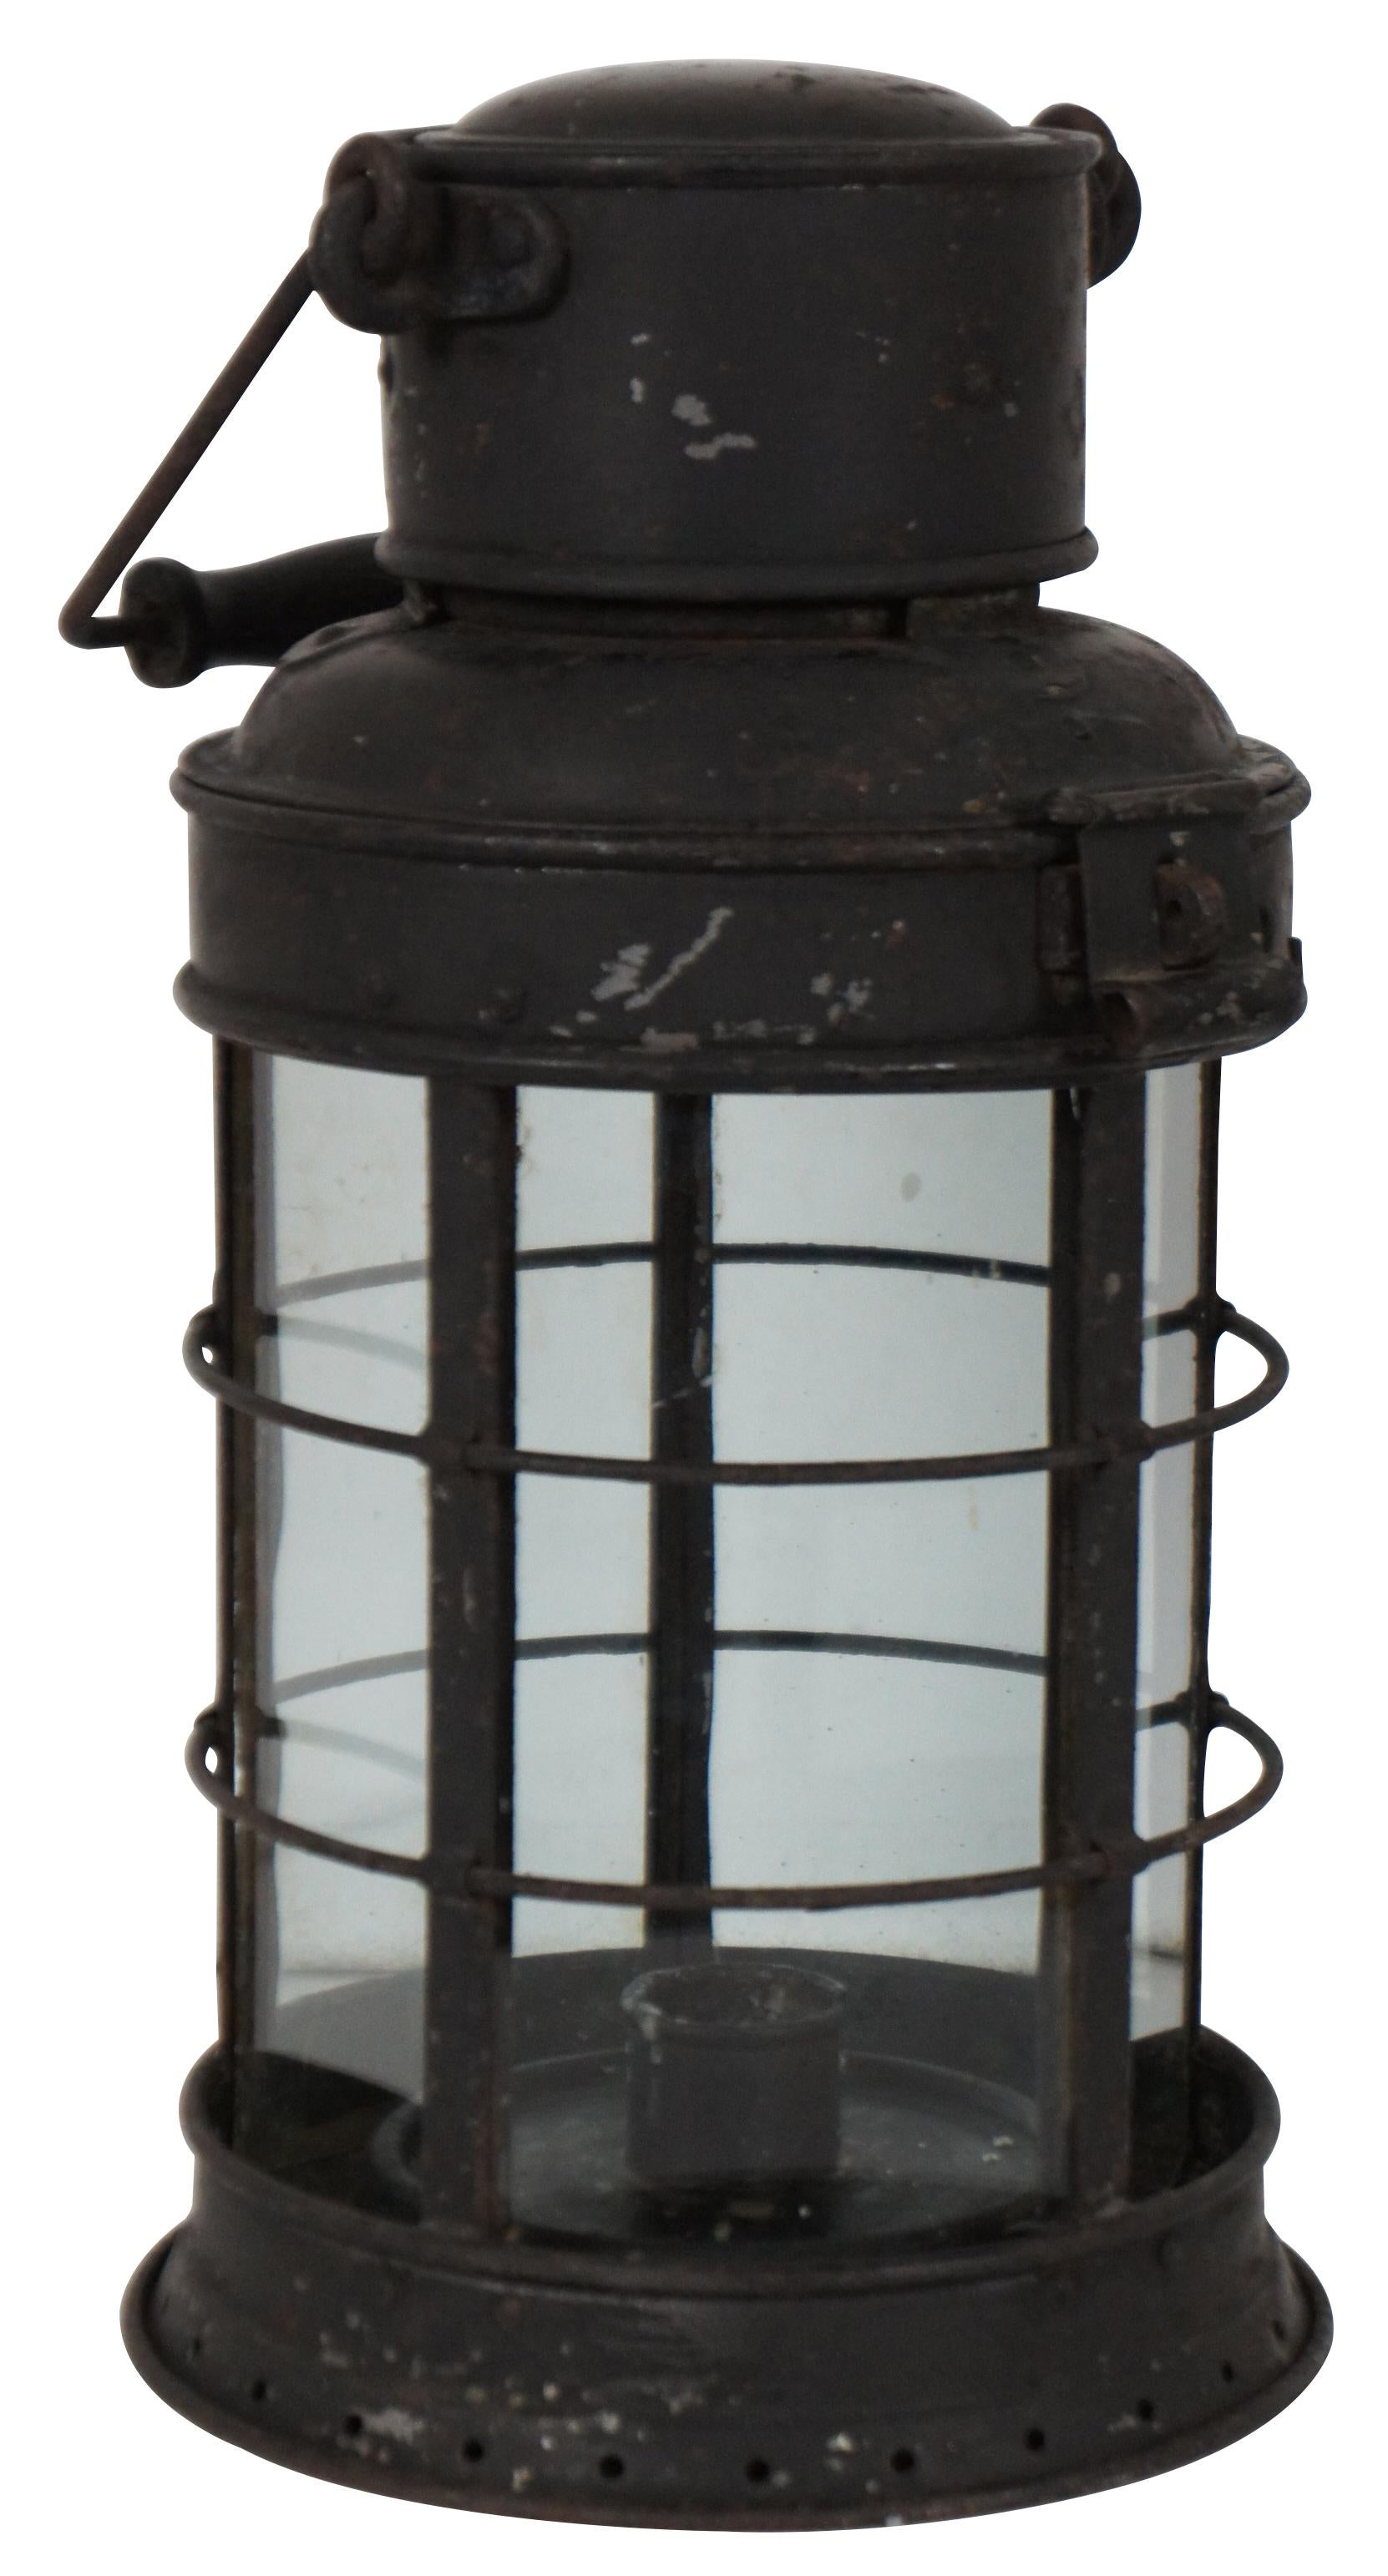 Circa 1880 - 1910 - il s'agit d'une lampe à bougie de la fin de l'époque victorienne, très probablement destinée aux chemins de fer. Elle a été fabriquée par la société Eli Griffiths and Son qui était bien connue pour la fabrication d'articles pour